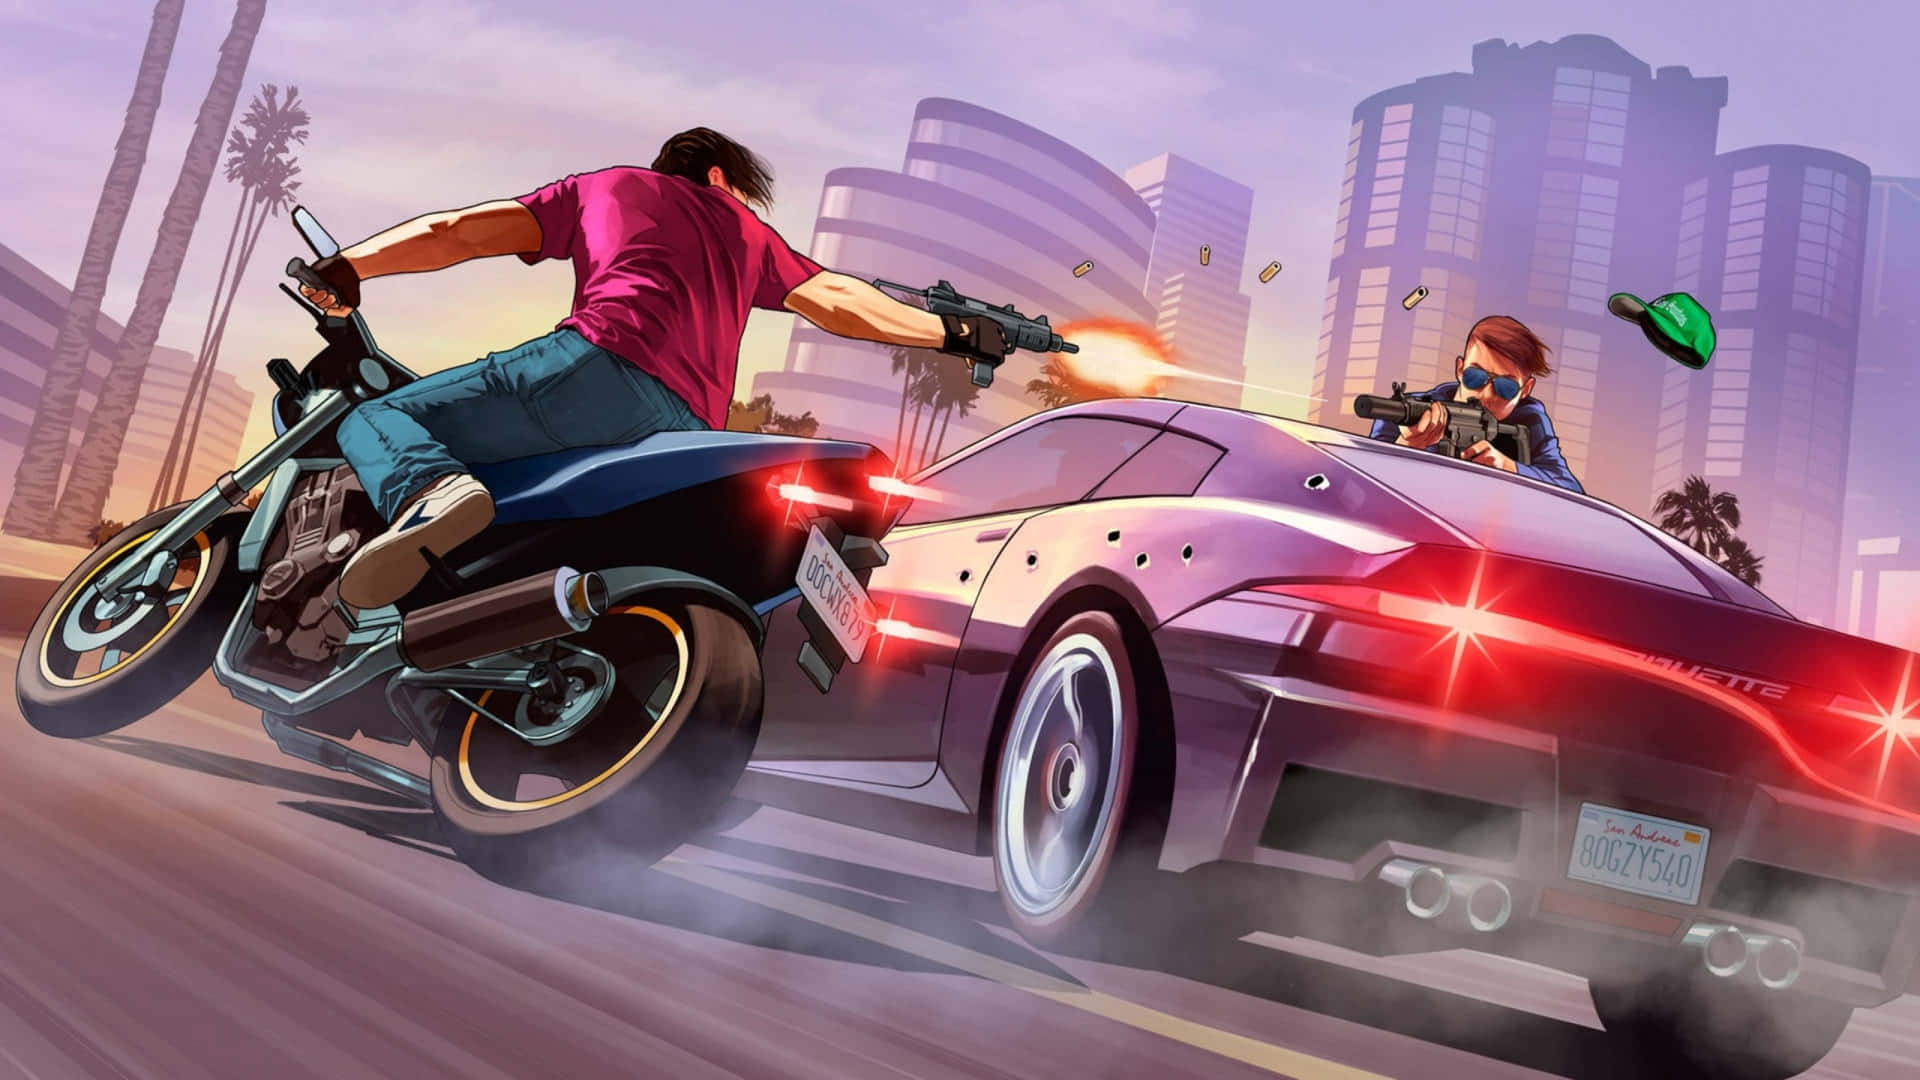 Experimentael Emocionante Mundo De Grand Theft Auto 5 En Alta Resolución A 2560x1440. Fondo de pantalla